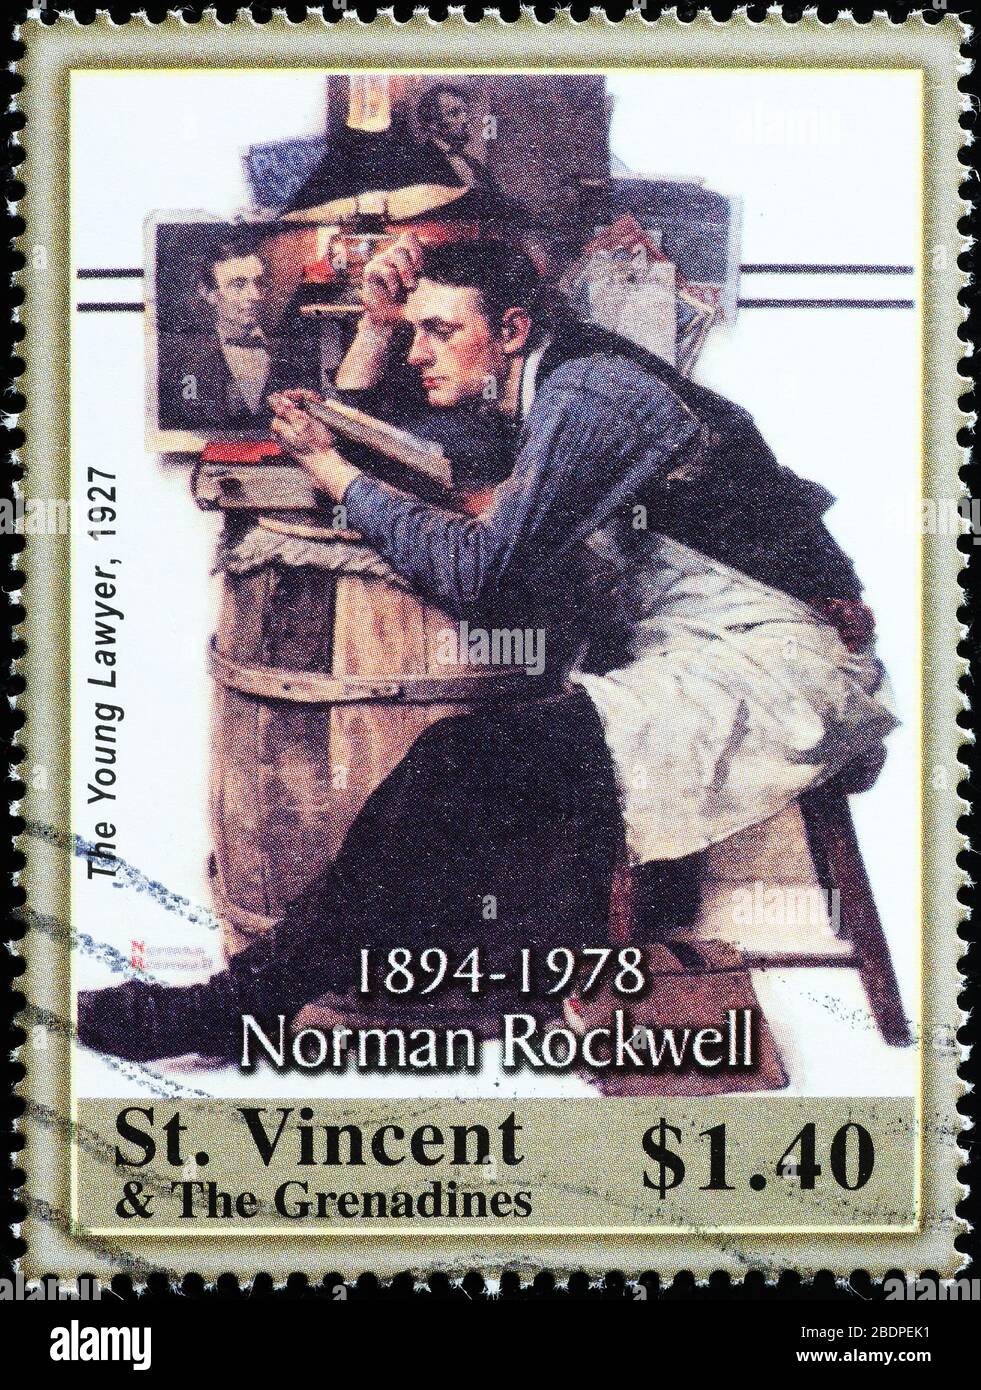 Le jeune avocat de Norman Rockwell sur le timbre Banque D'Images